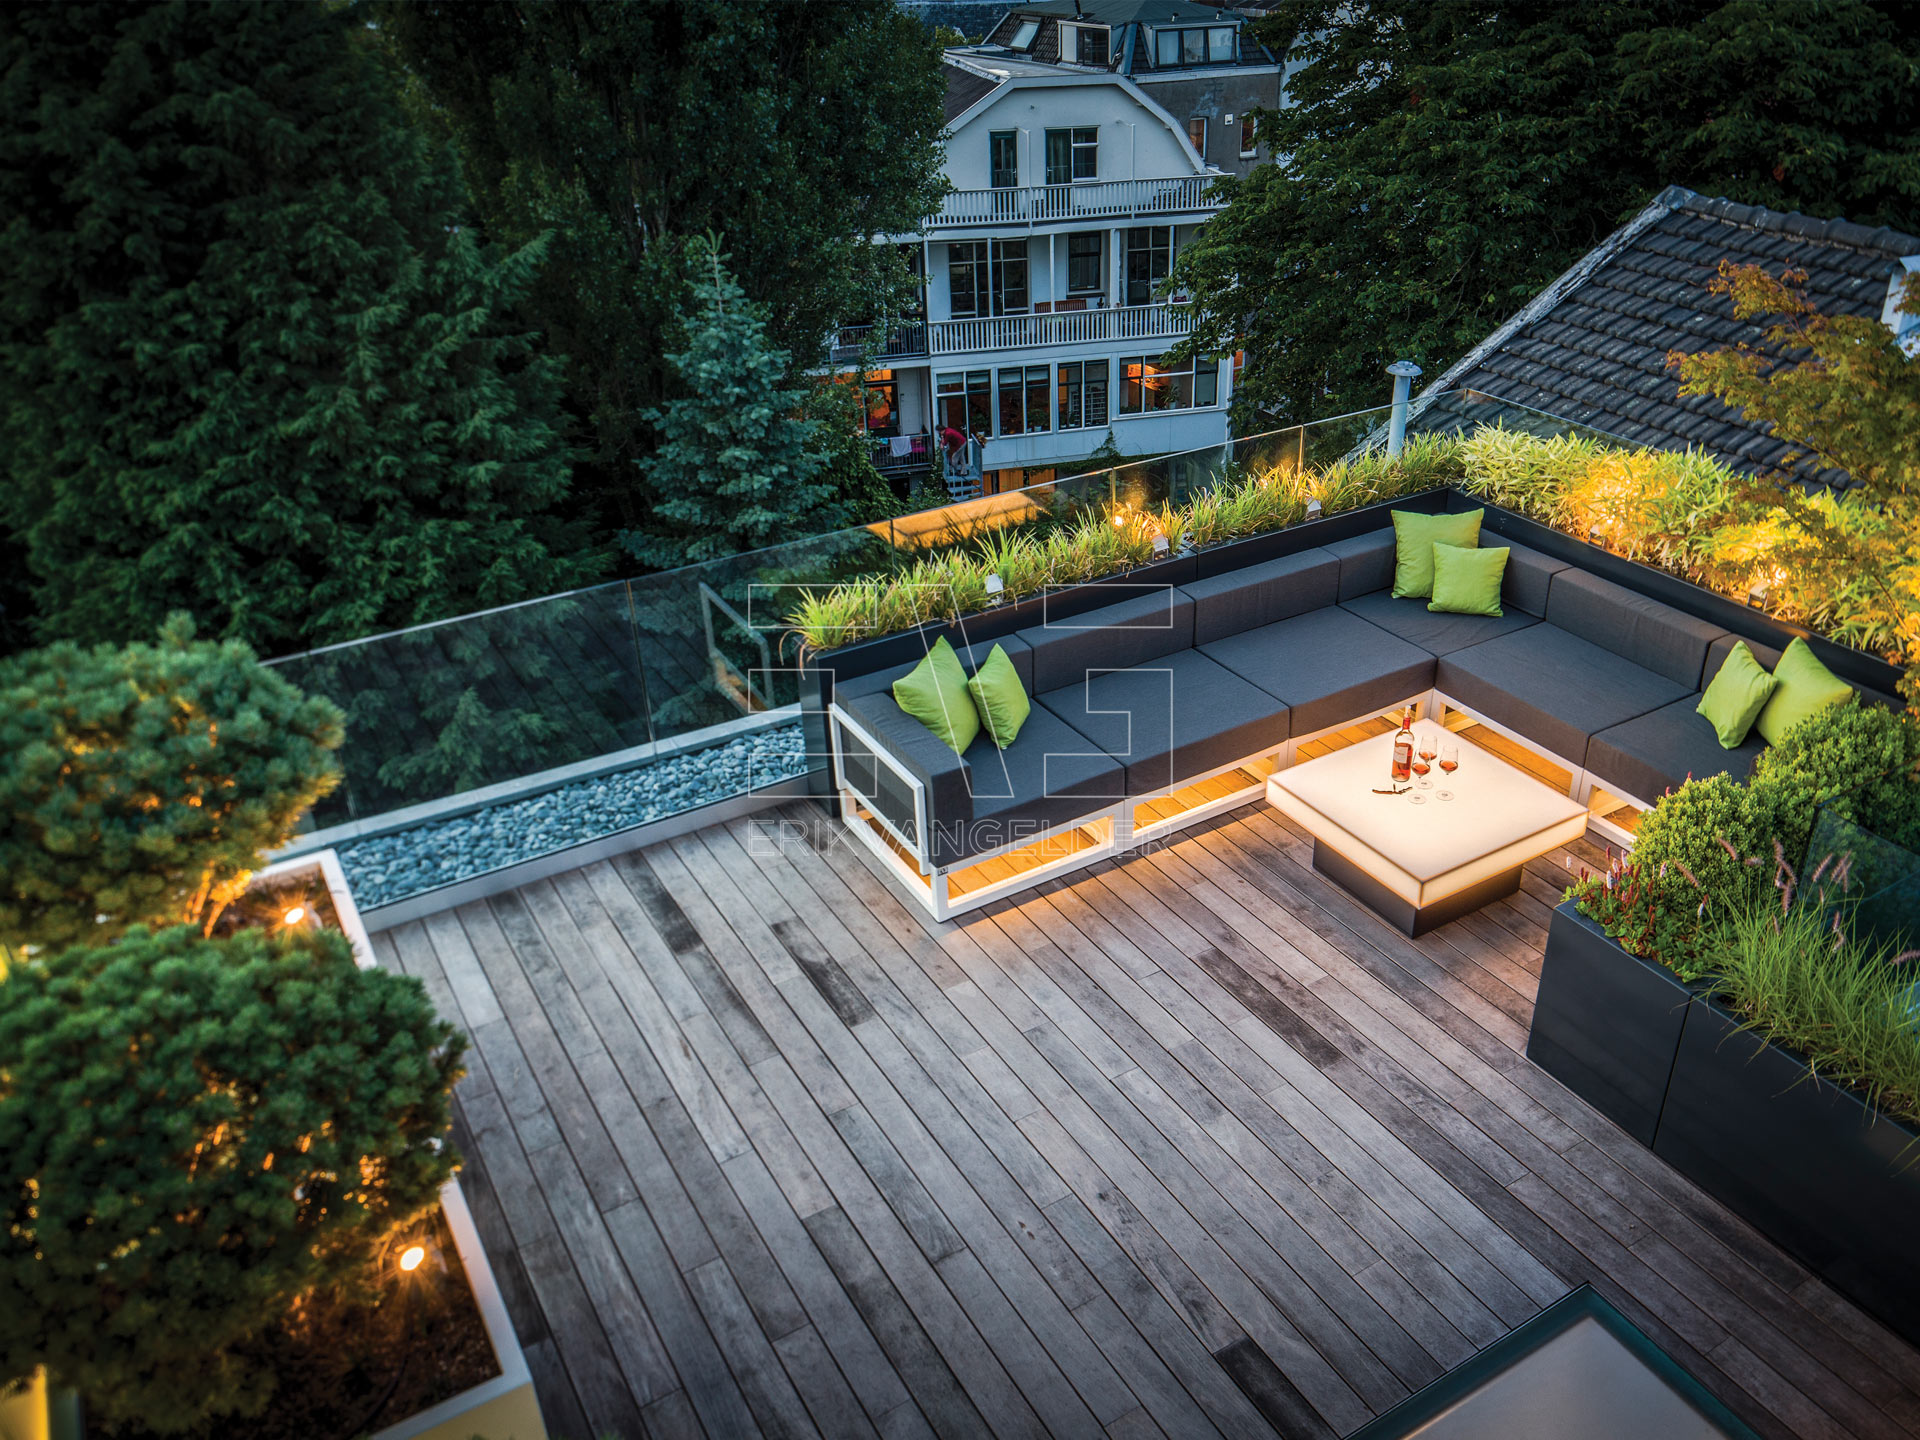 Luxe dakterras daktuin roof garden exlusive luxury design lounge avond erikvangelder tuindesign tuinarchitect sfeervol strak modern